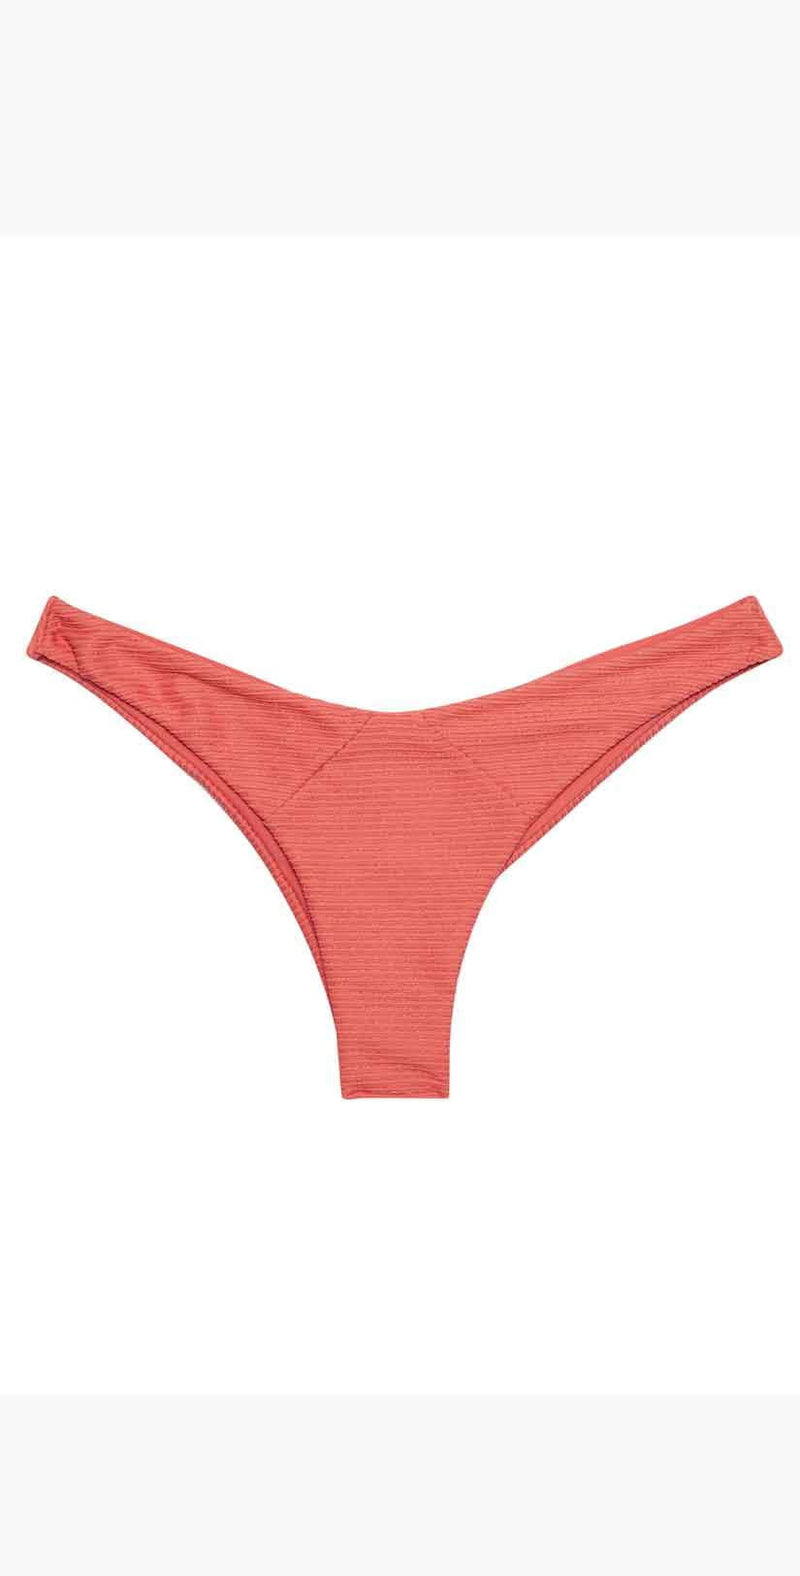 Beach Bunny Sydney Tango Bikini Bottom in Rose: